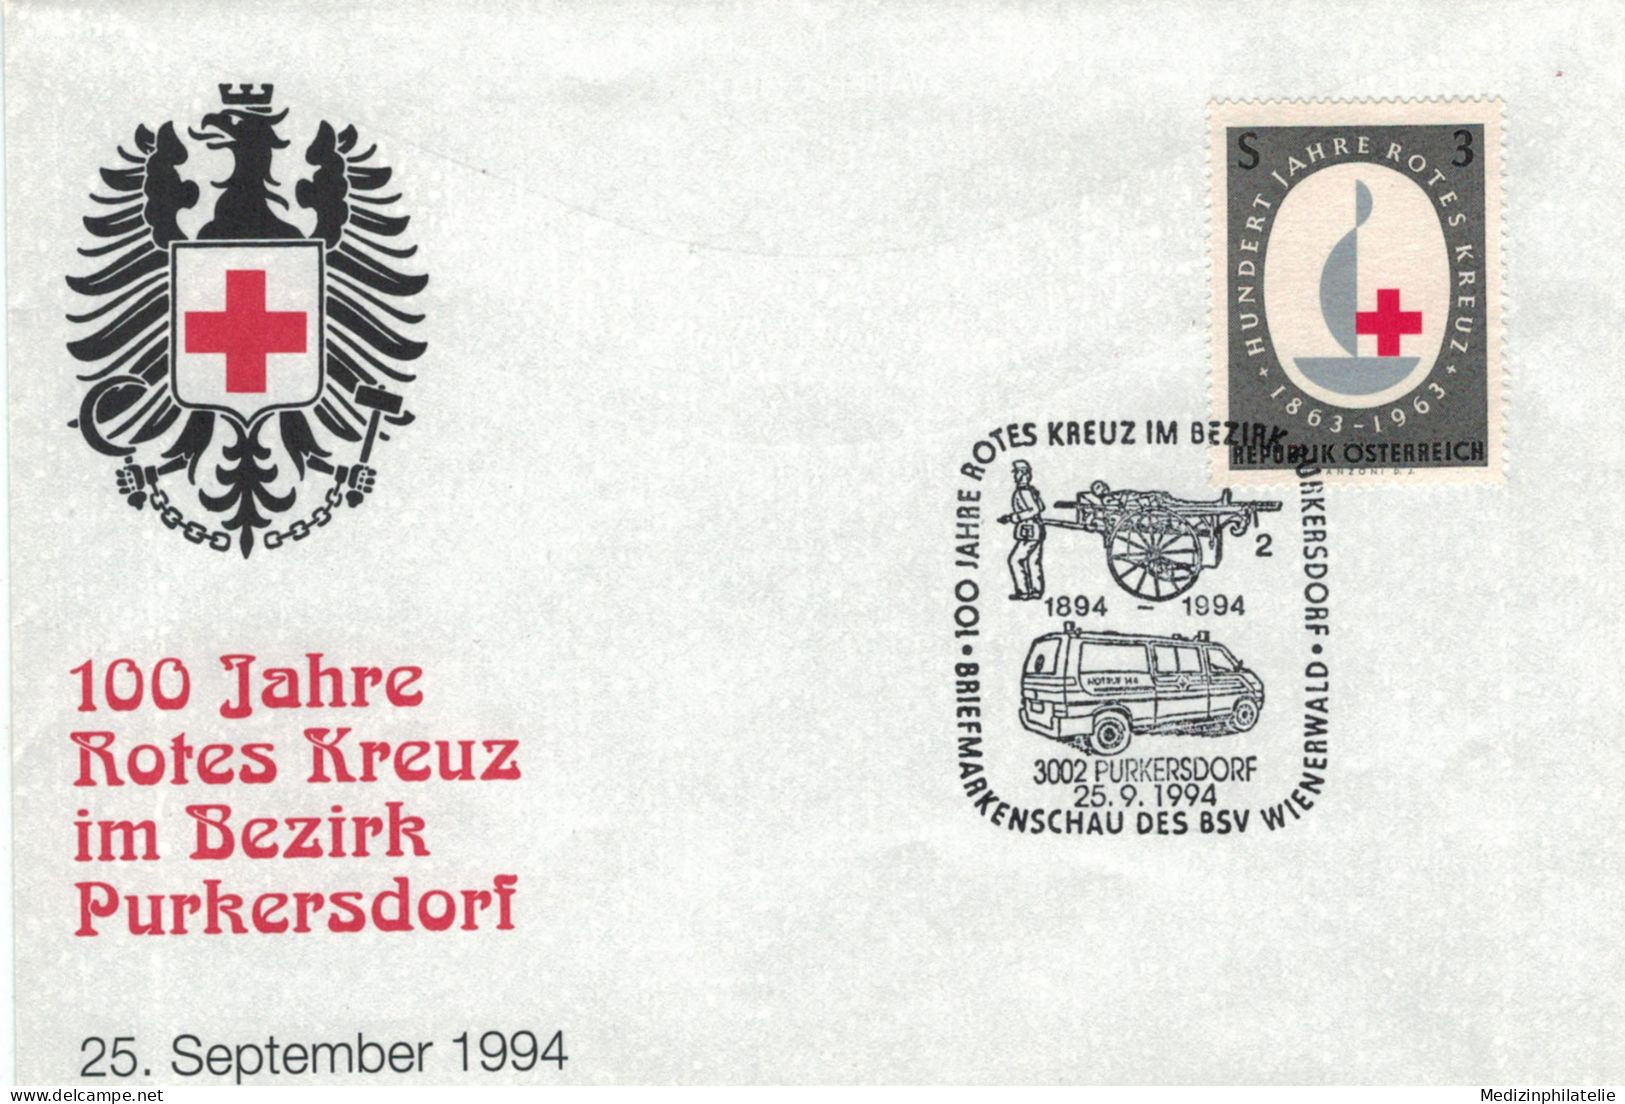 Rotes Kreuz - 3002 Purkersdorf 1994 Handkarren - Erste Hilfe